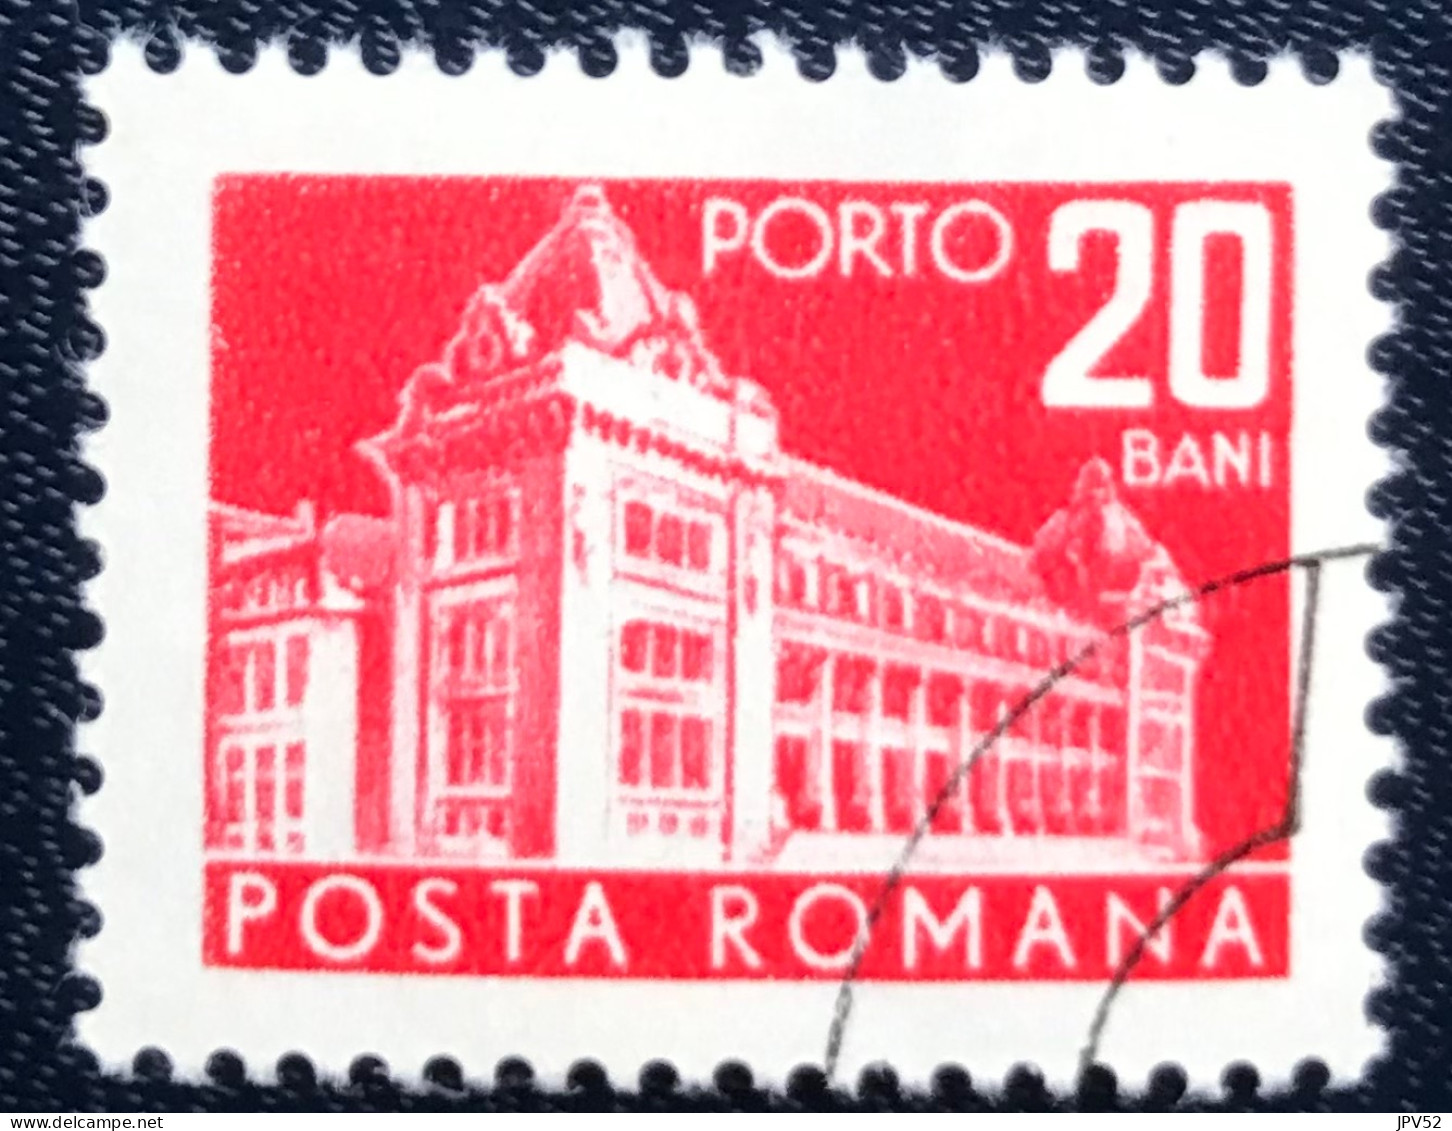 Romana - Roemenië - C14/54 - 1970 - (°)used - Michel 116 - Postkantoor - Postage Due